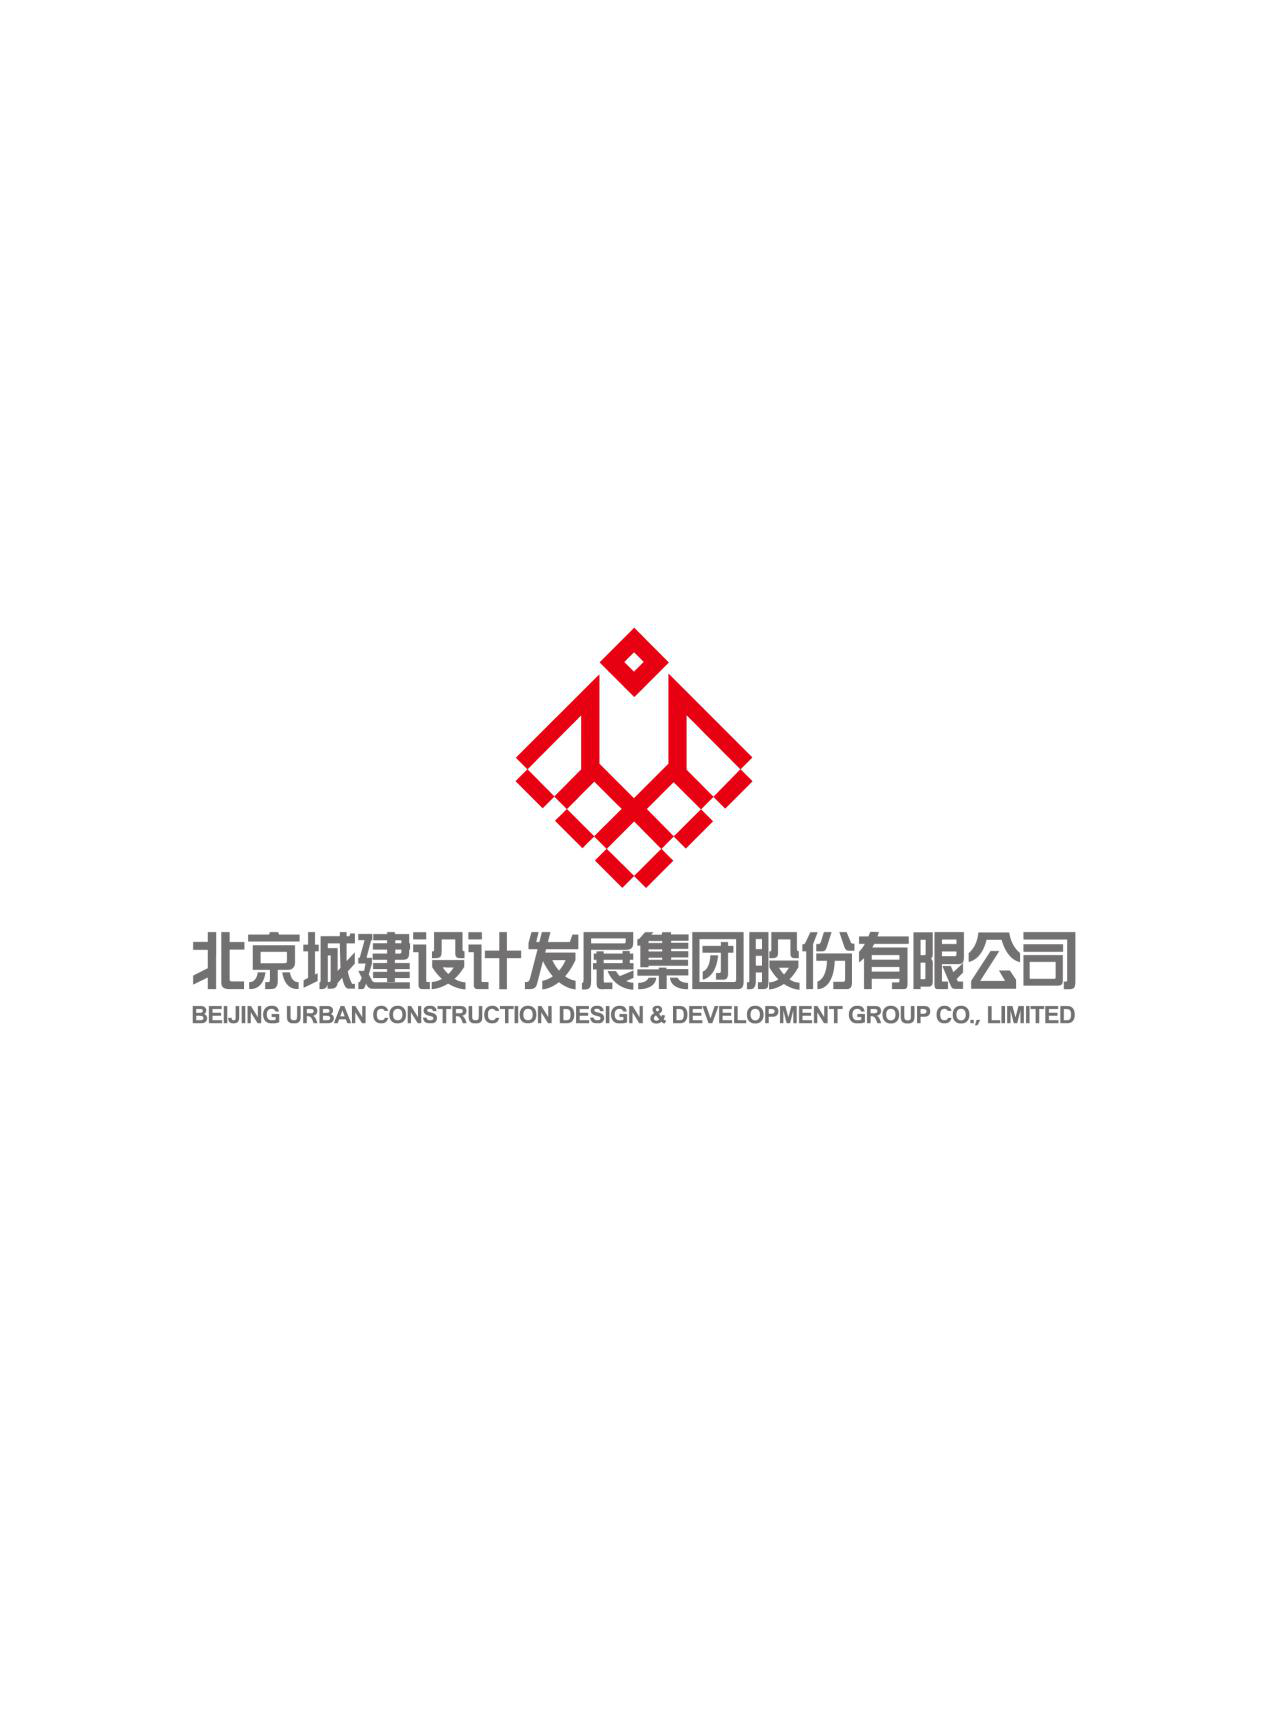 北京城建设计发展集团股份有限公司海南分公司